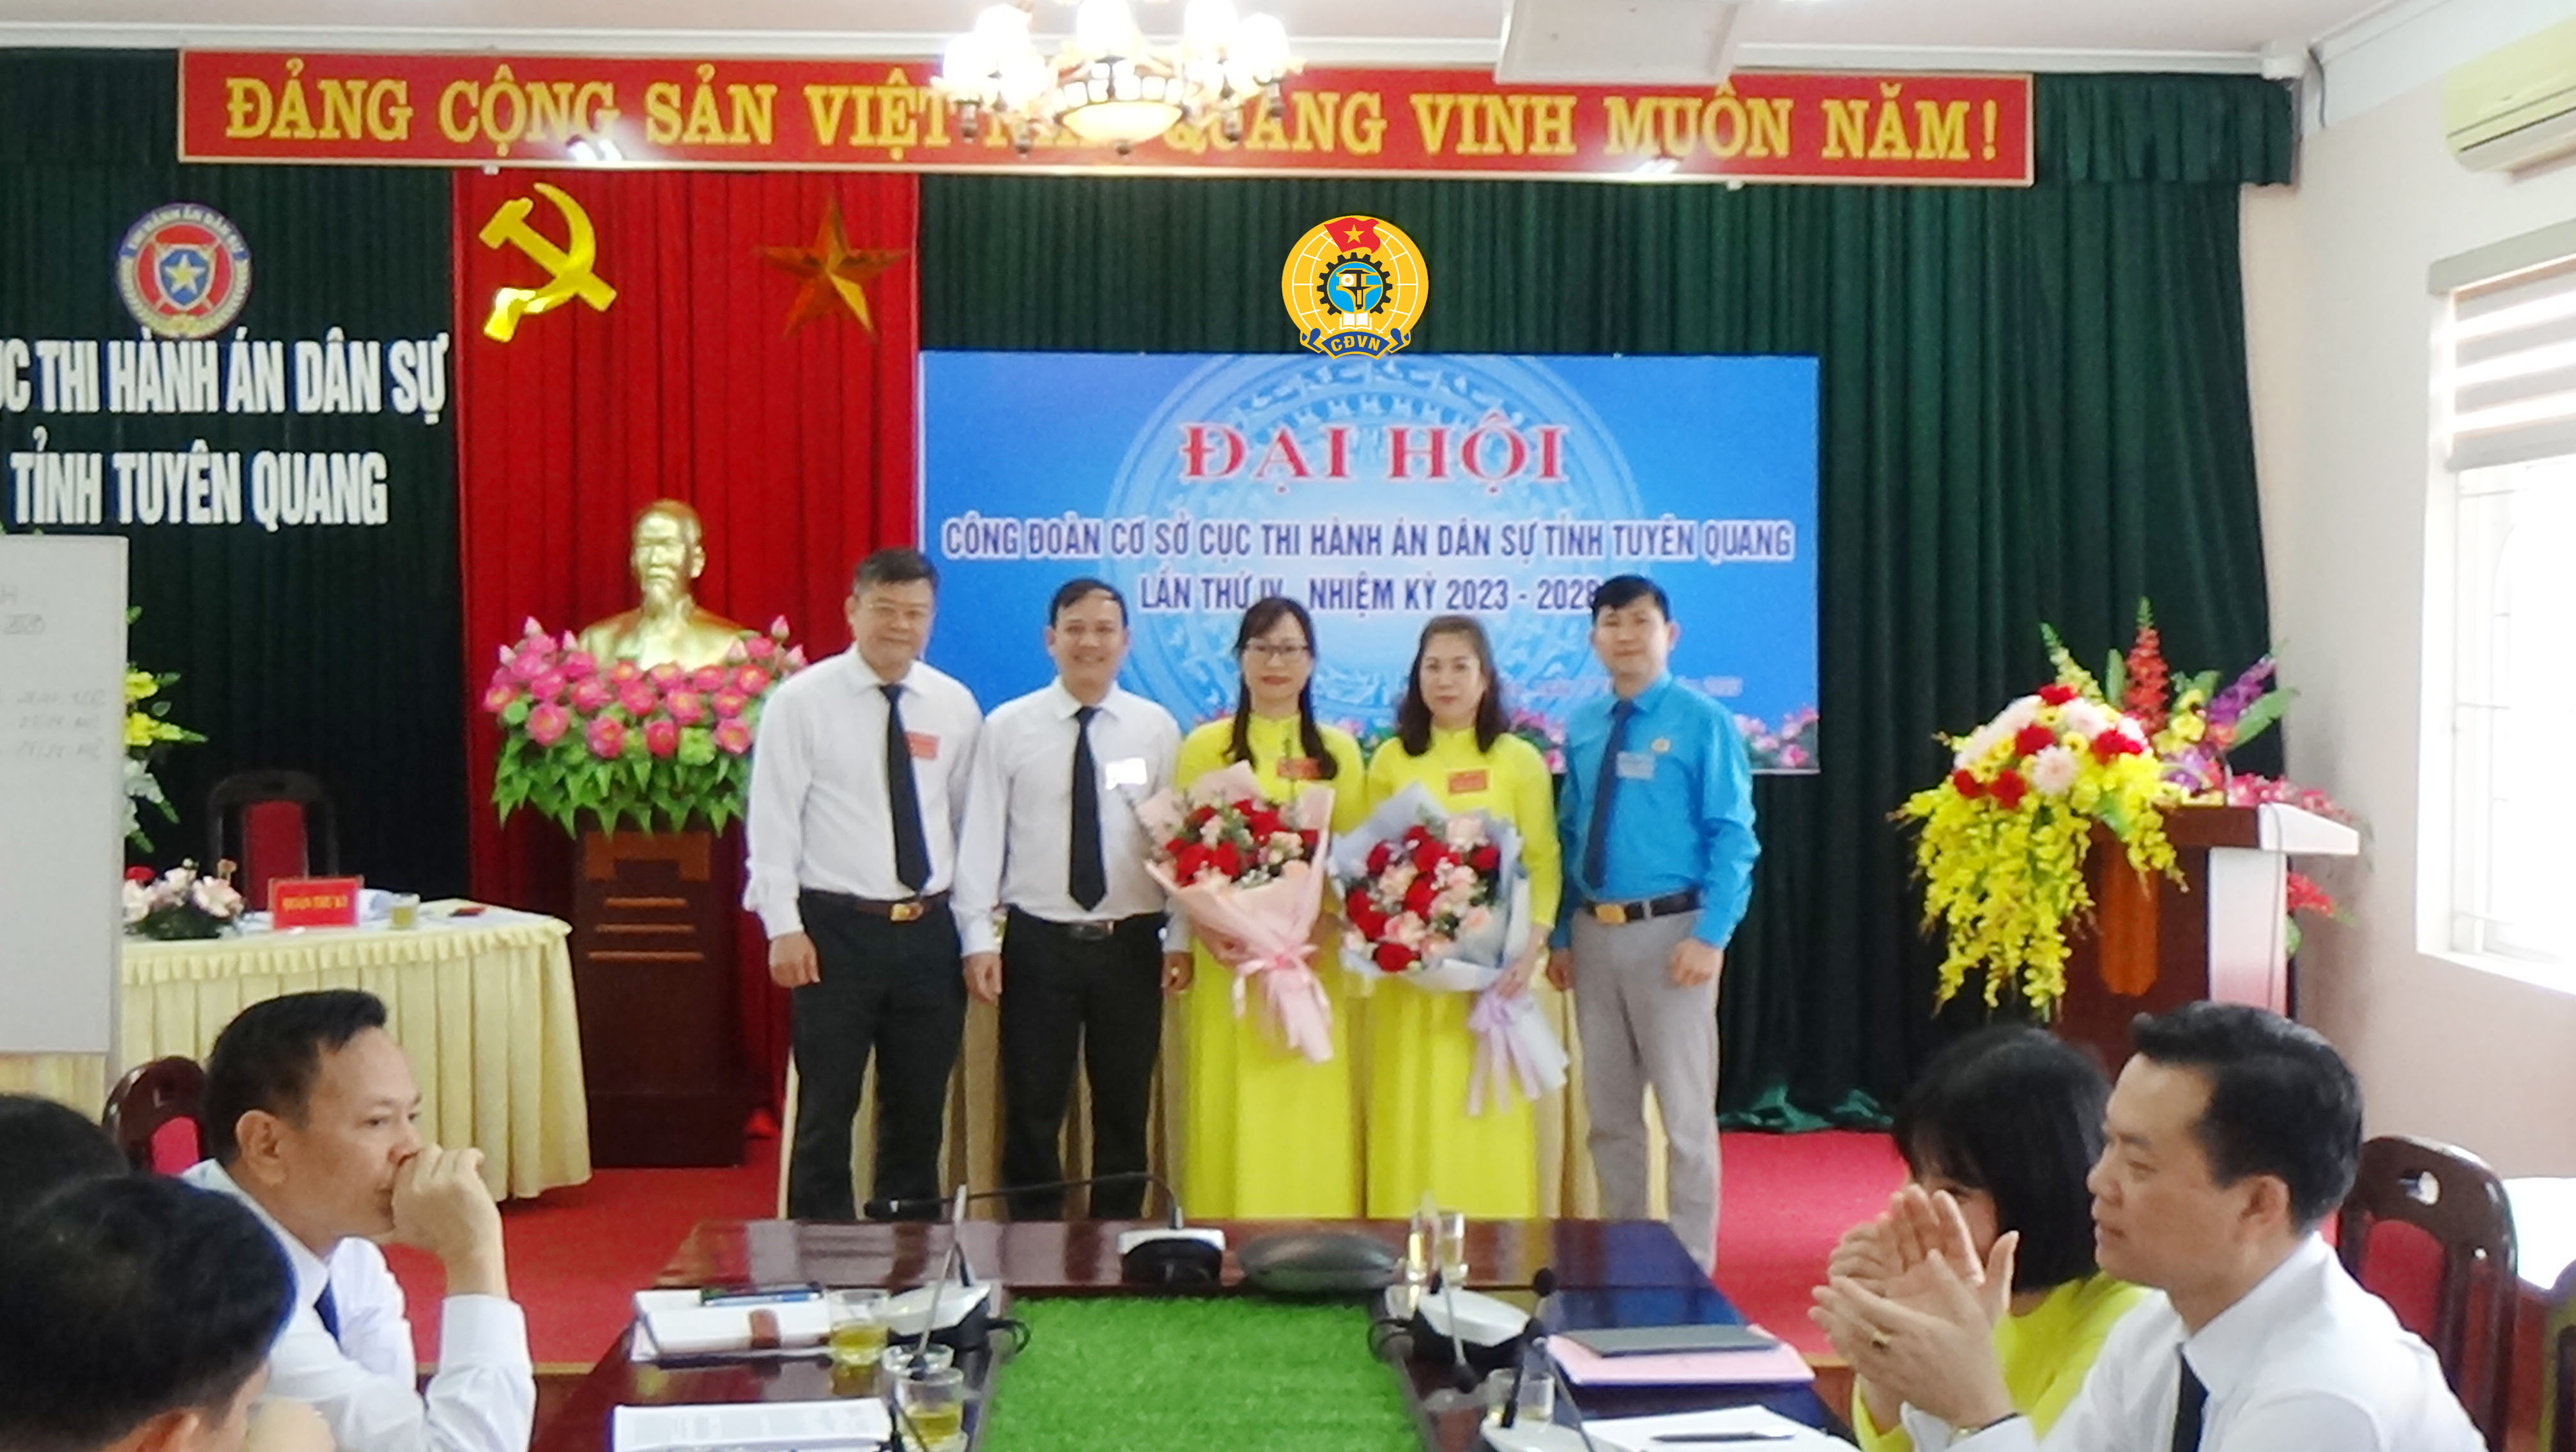 Tổ chức thành công Đại hội Công đoàn cơ sở Cục Thi hành án dân sự tỉnh Tuyên Quang lần thứ IV, nhiệm kỳ 2023-2028